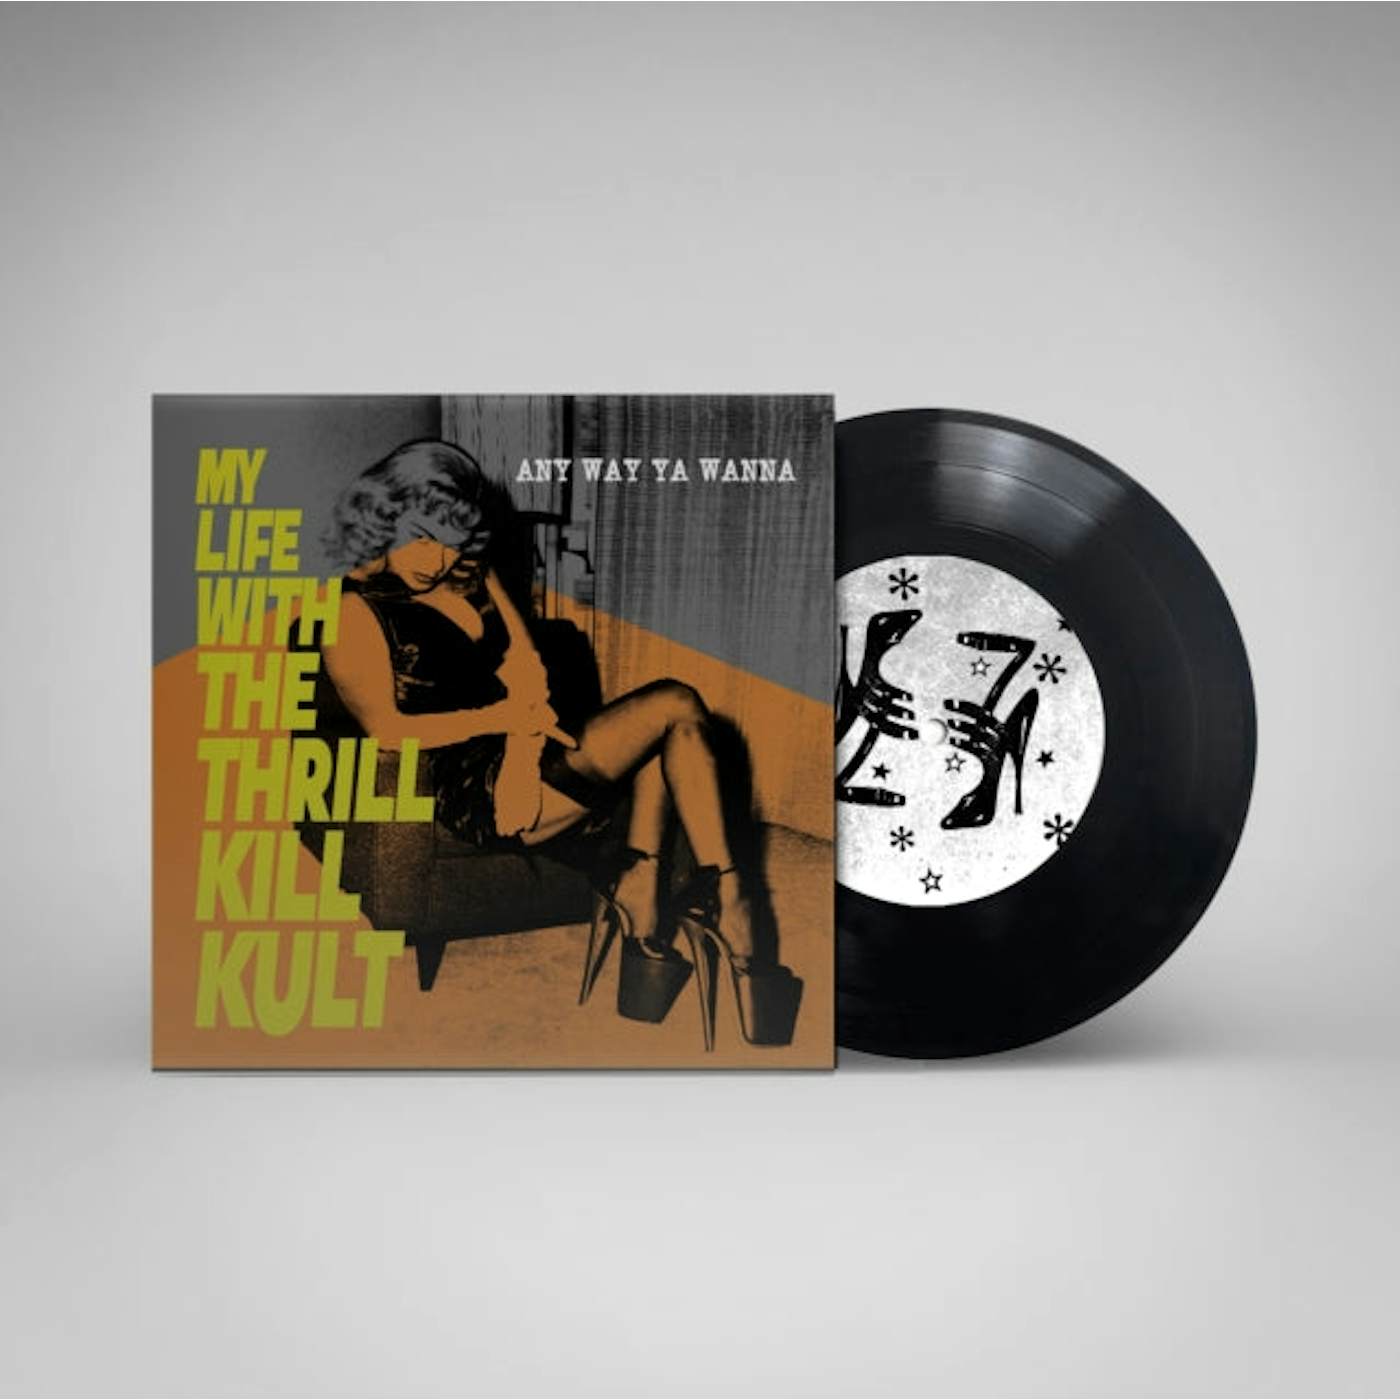 My Life With The Thrill Kill Kult LP - Any Way Ya Wanna (Vinyl)